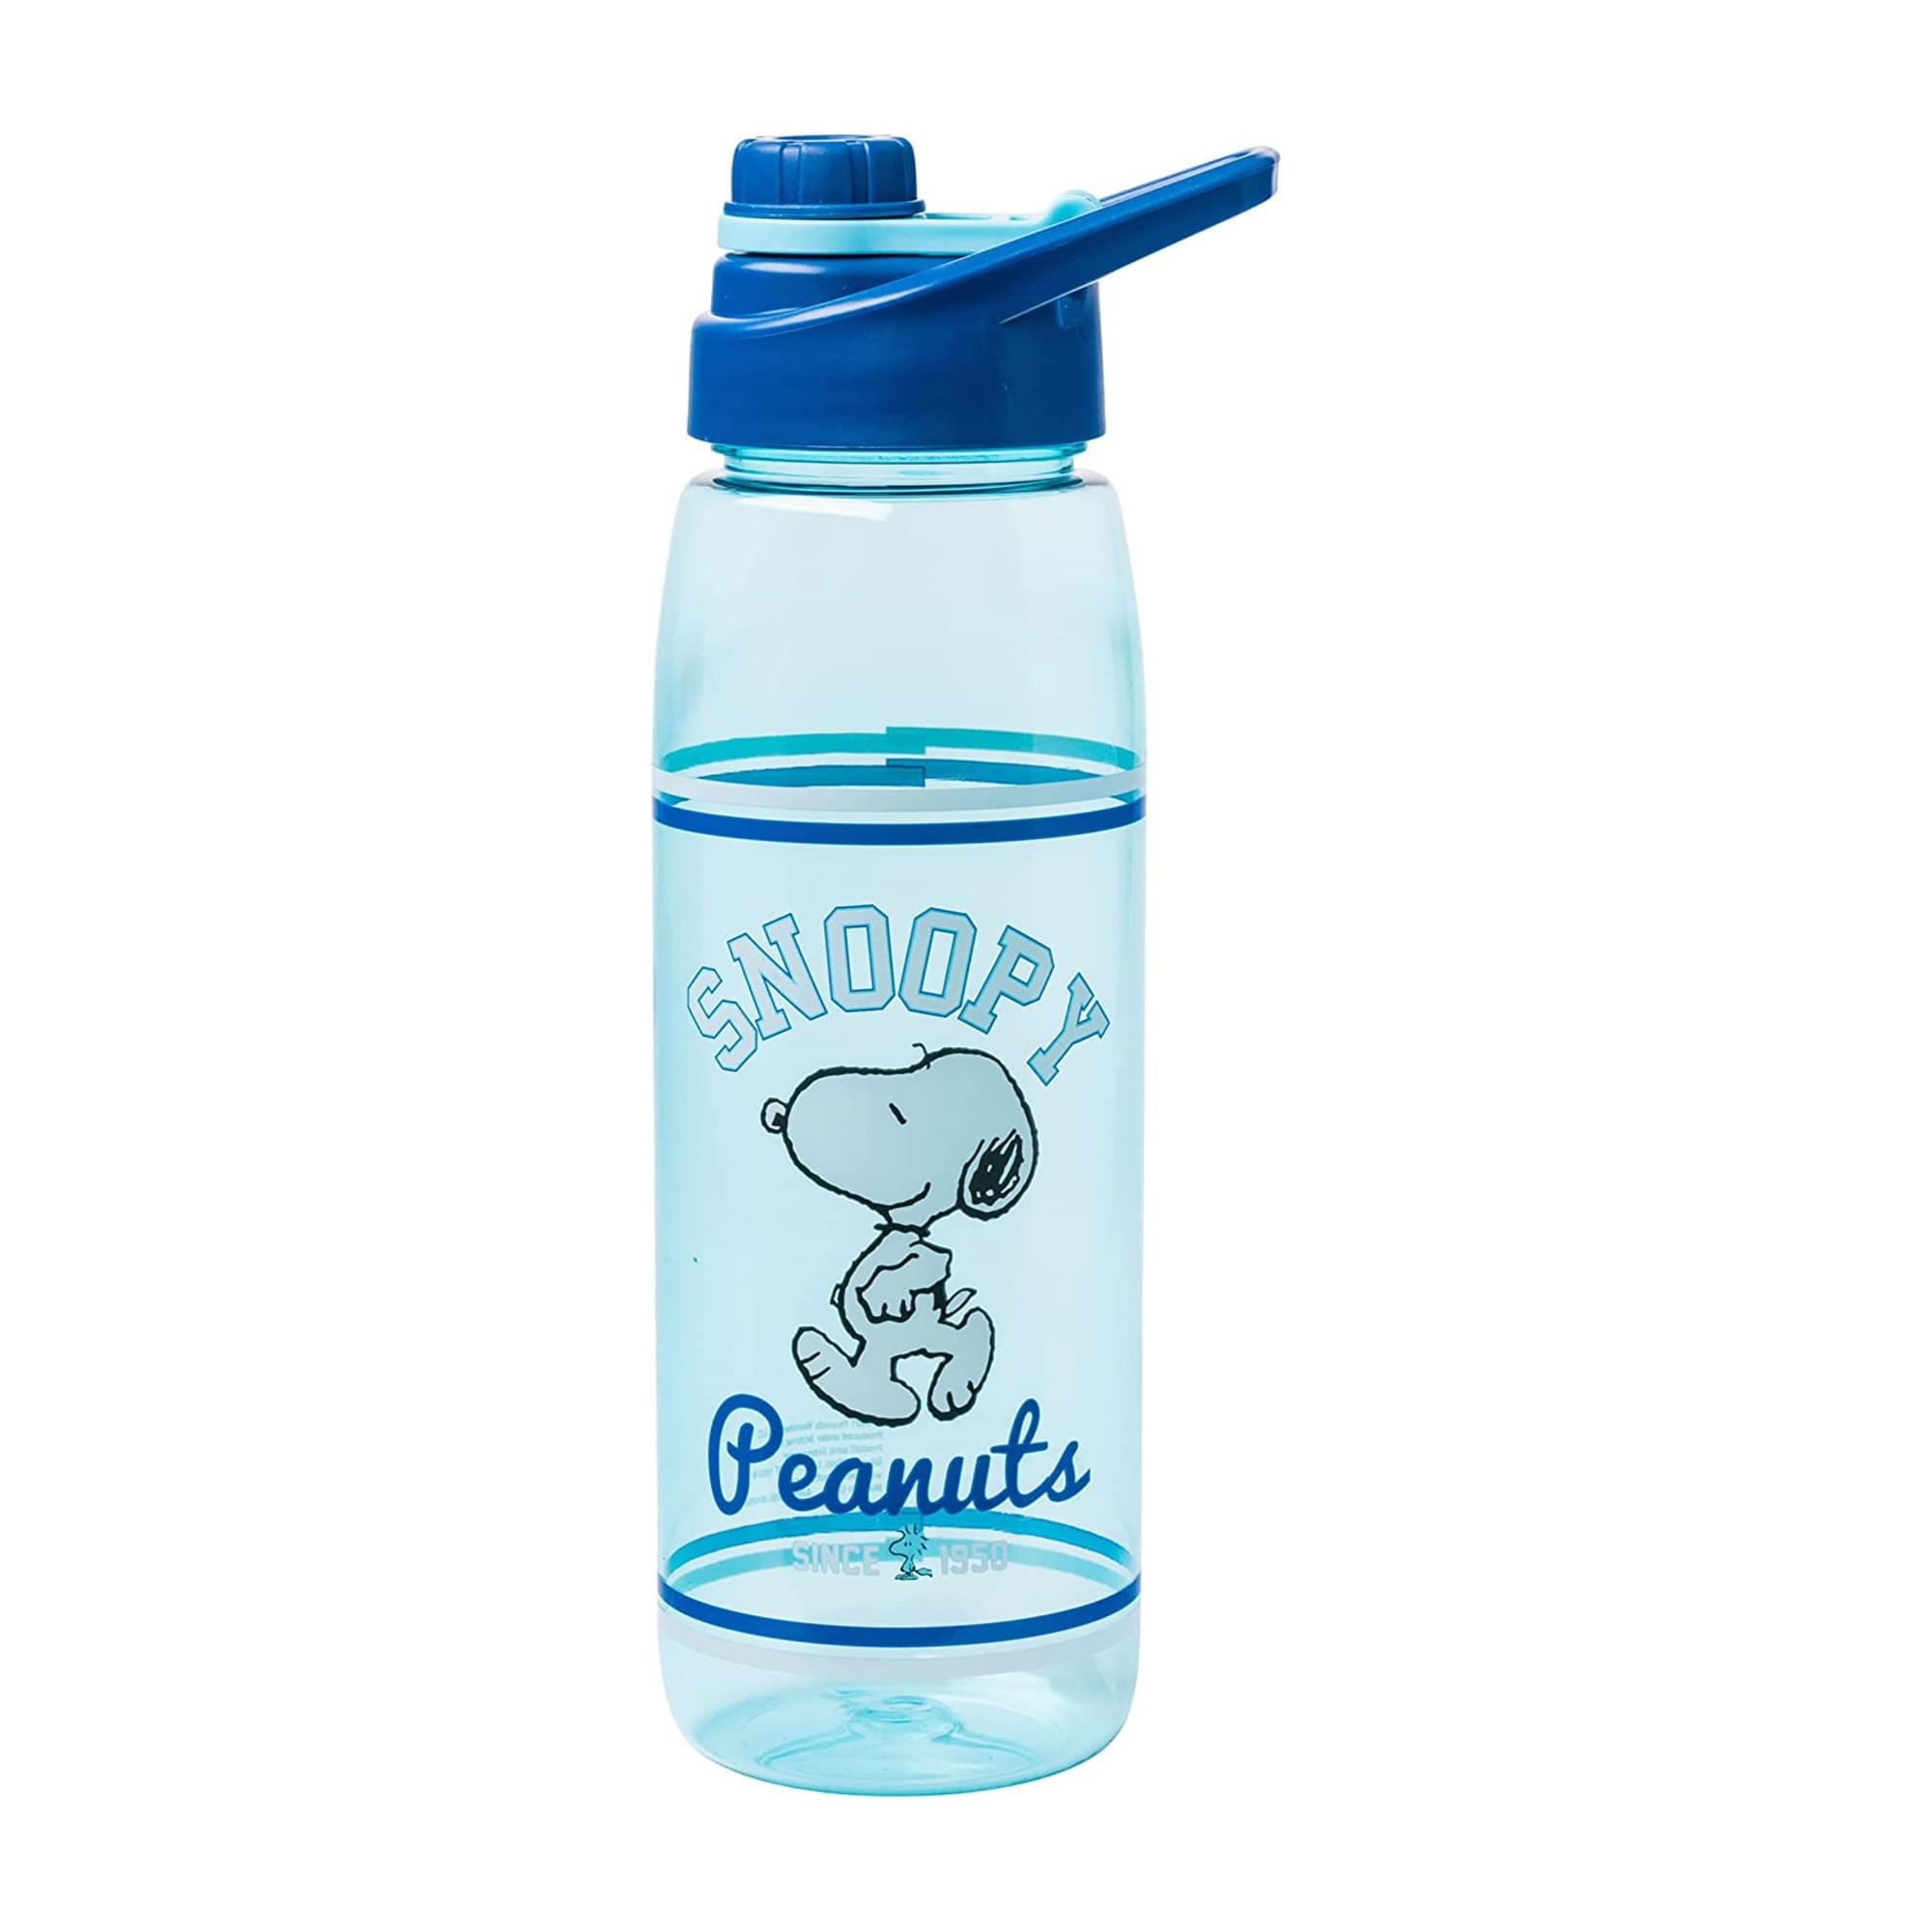 Disney Lilo & Stitch Tropical 28oz Plastic Water Bottle w/ Screw